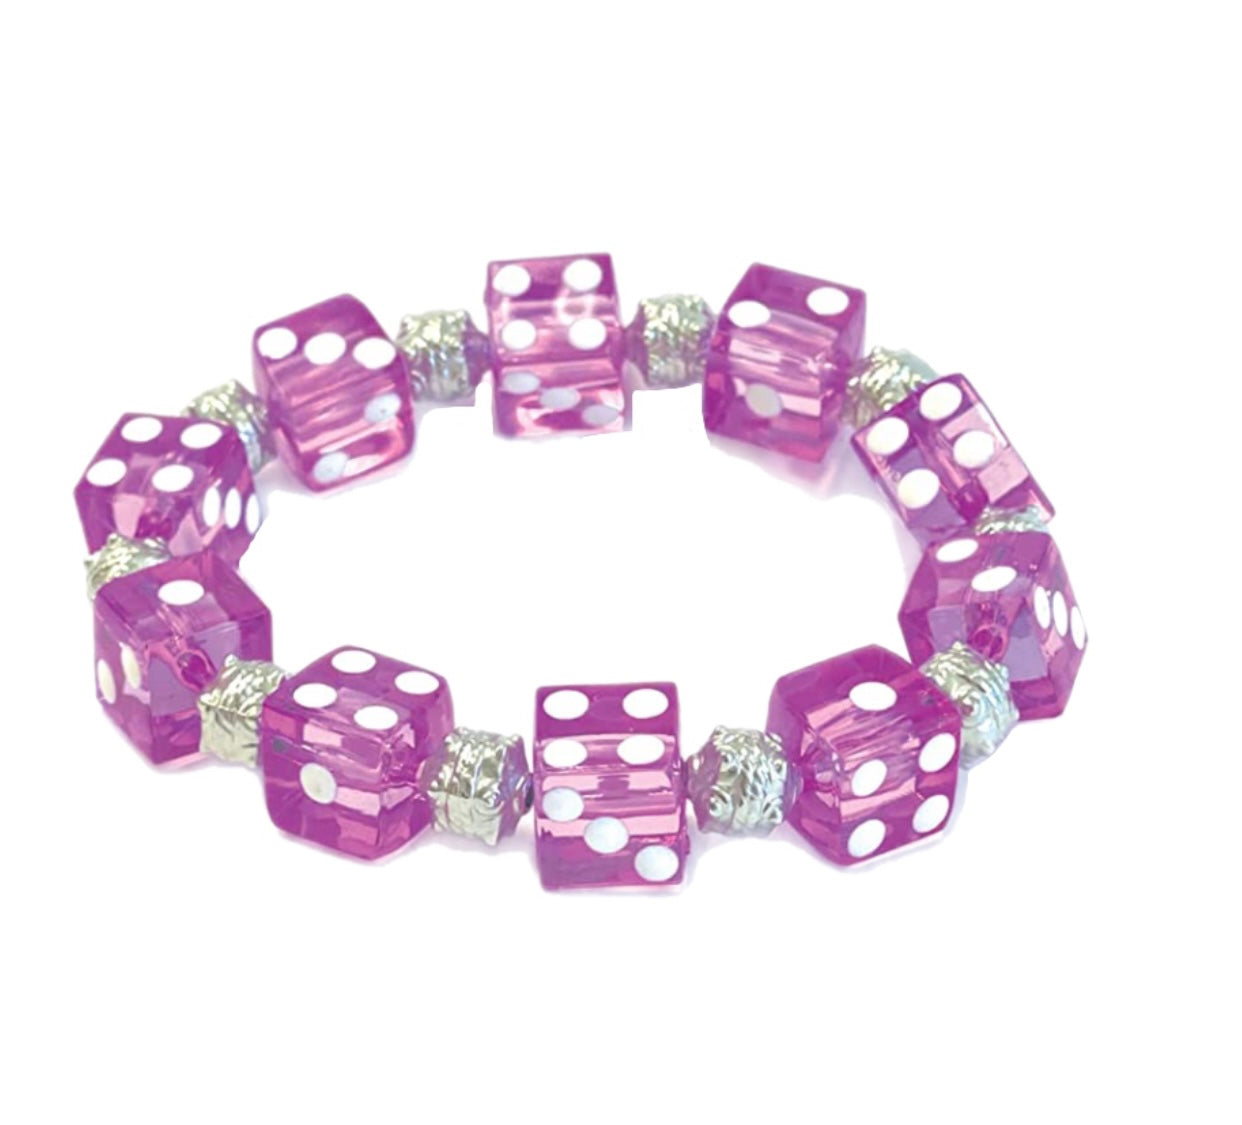 Trendy Dice Beads Bracelet Acrylic Funny Game Lucky Dice Stretch Bracelets  